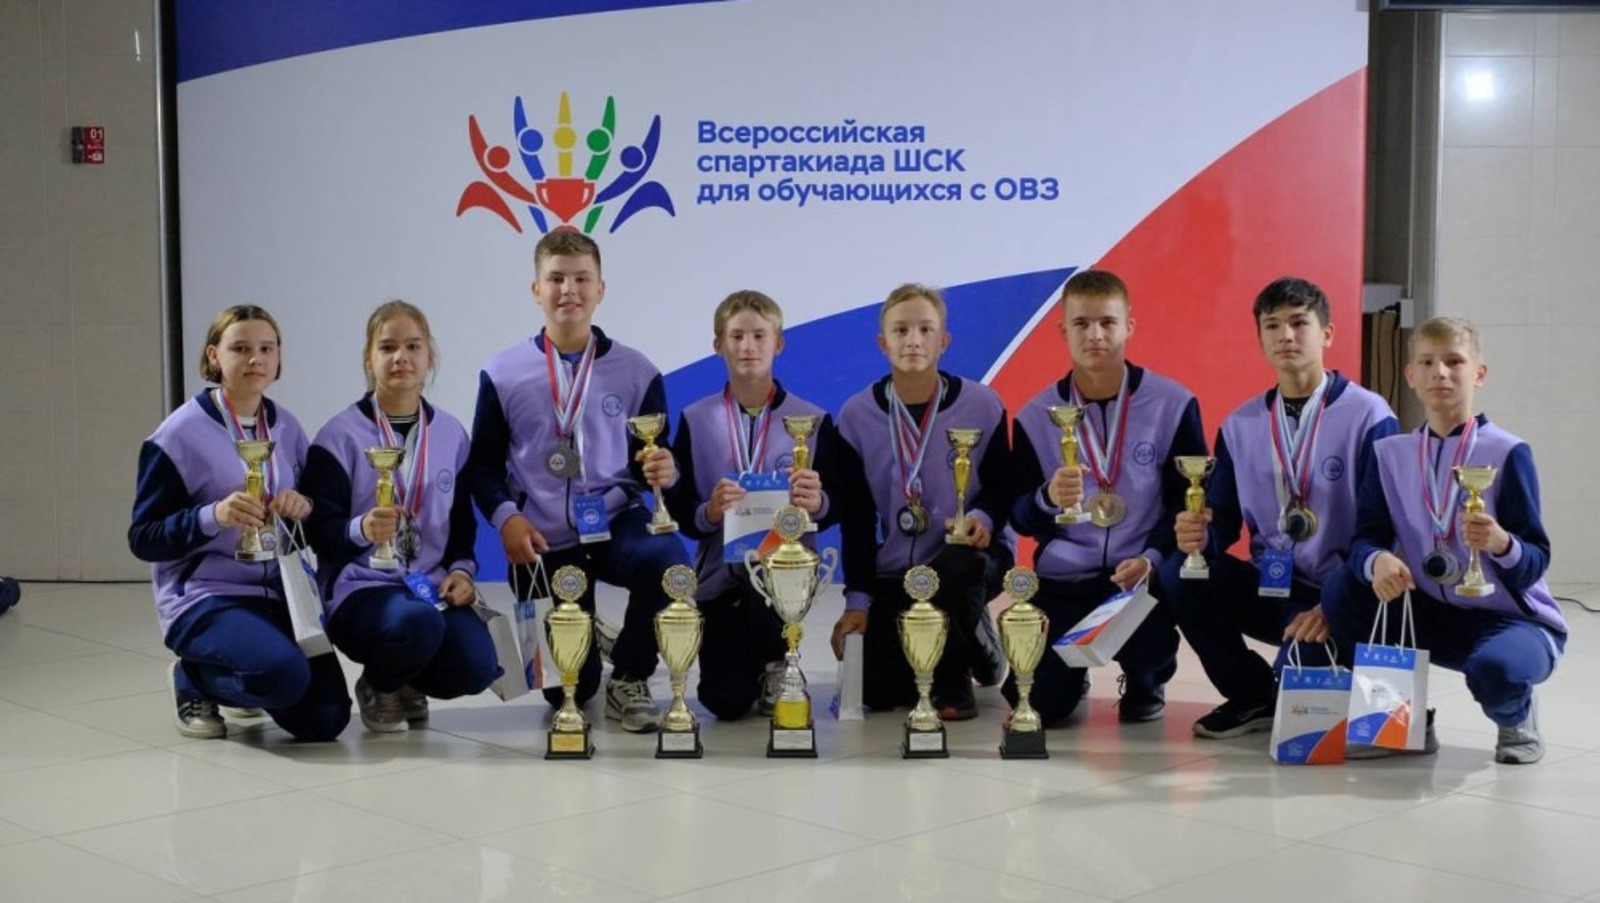 Команда Башкирии заняла 2 место во всероссийской спартакиаде школьных спортивных клубов